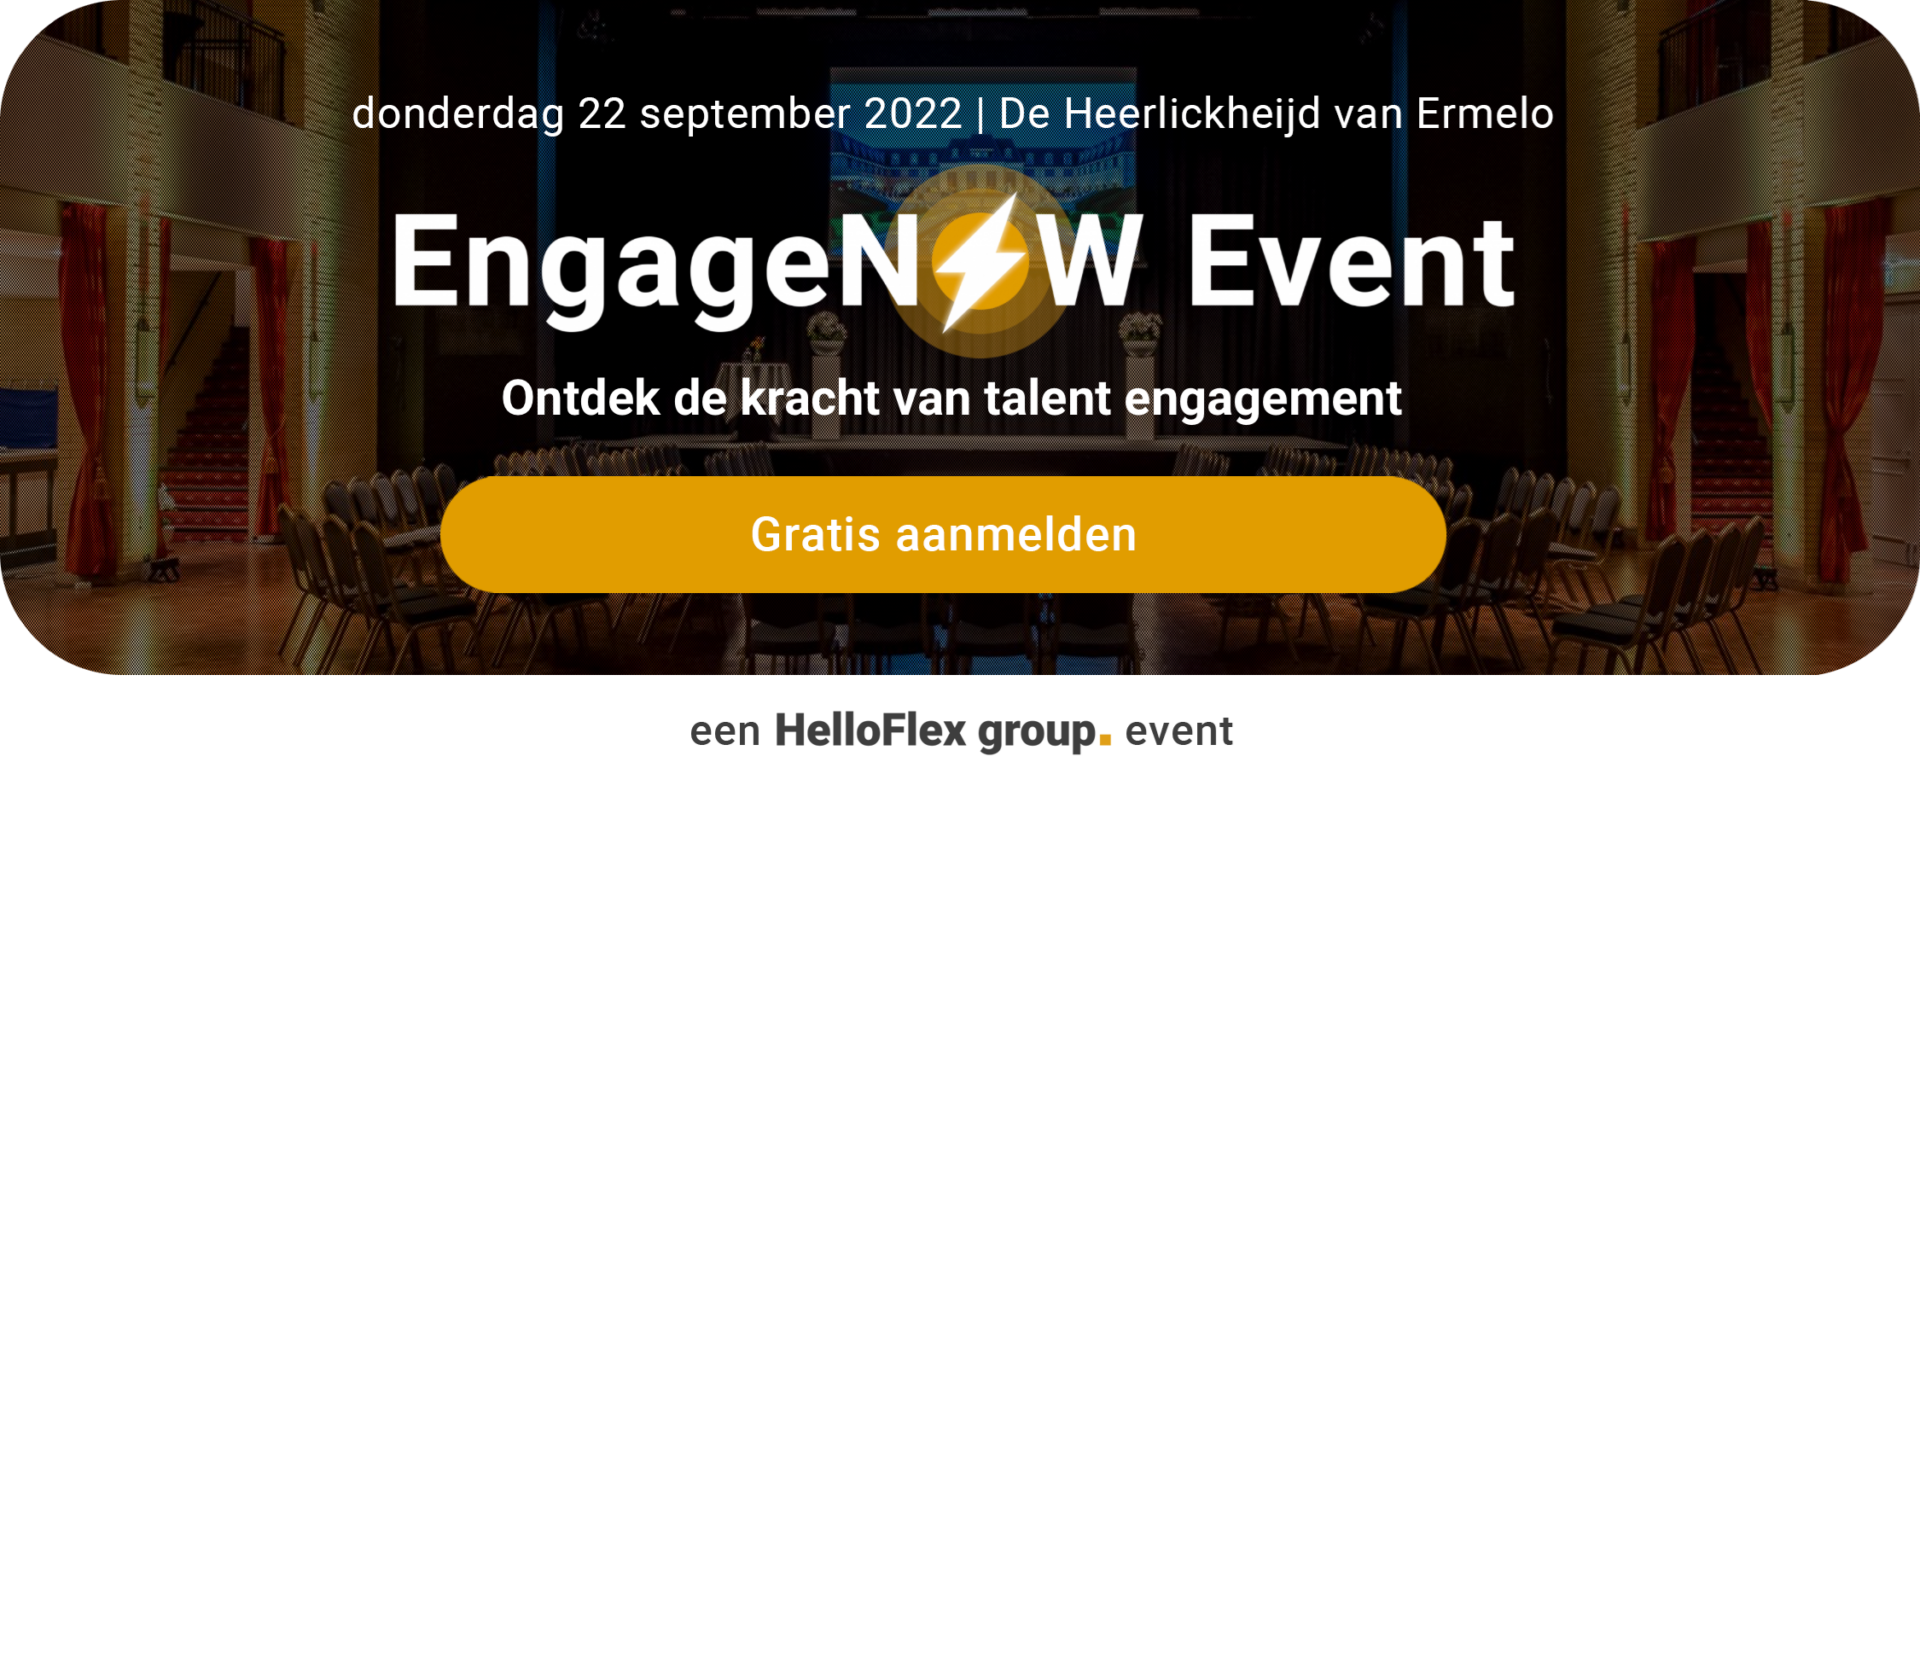 EngageNOW Event - gratis aanmelden